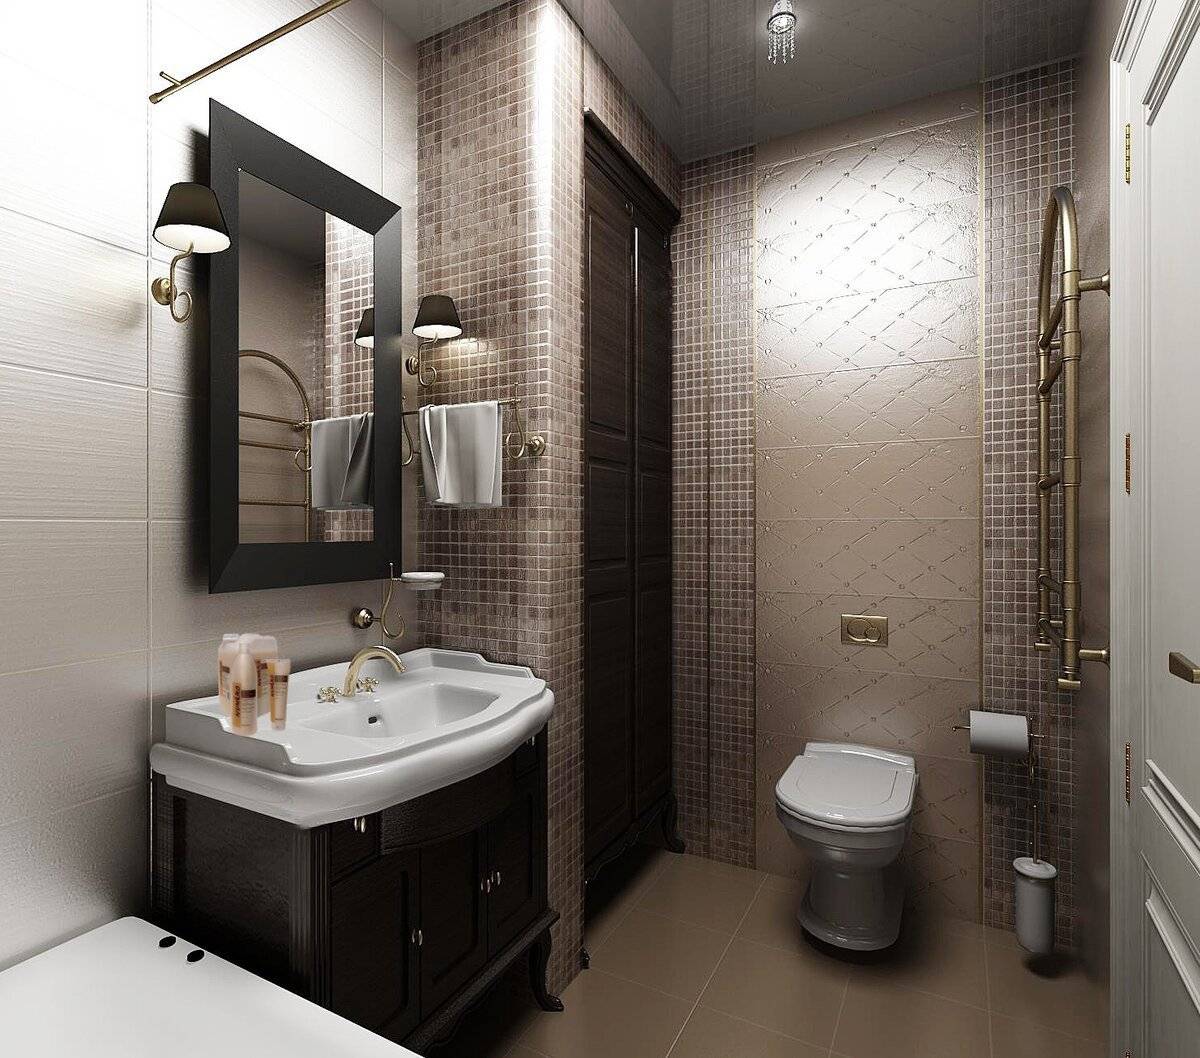 Дизайн ванной комнаты и туалета. Особенности интерьера и рекомендации по выбору стиля оформления